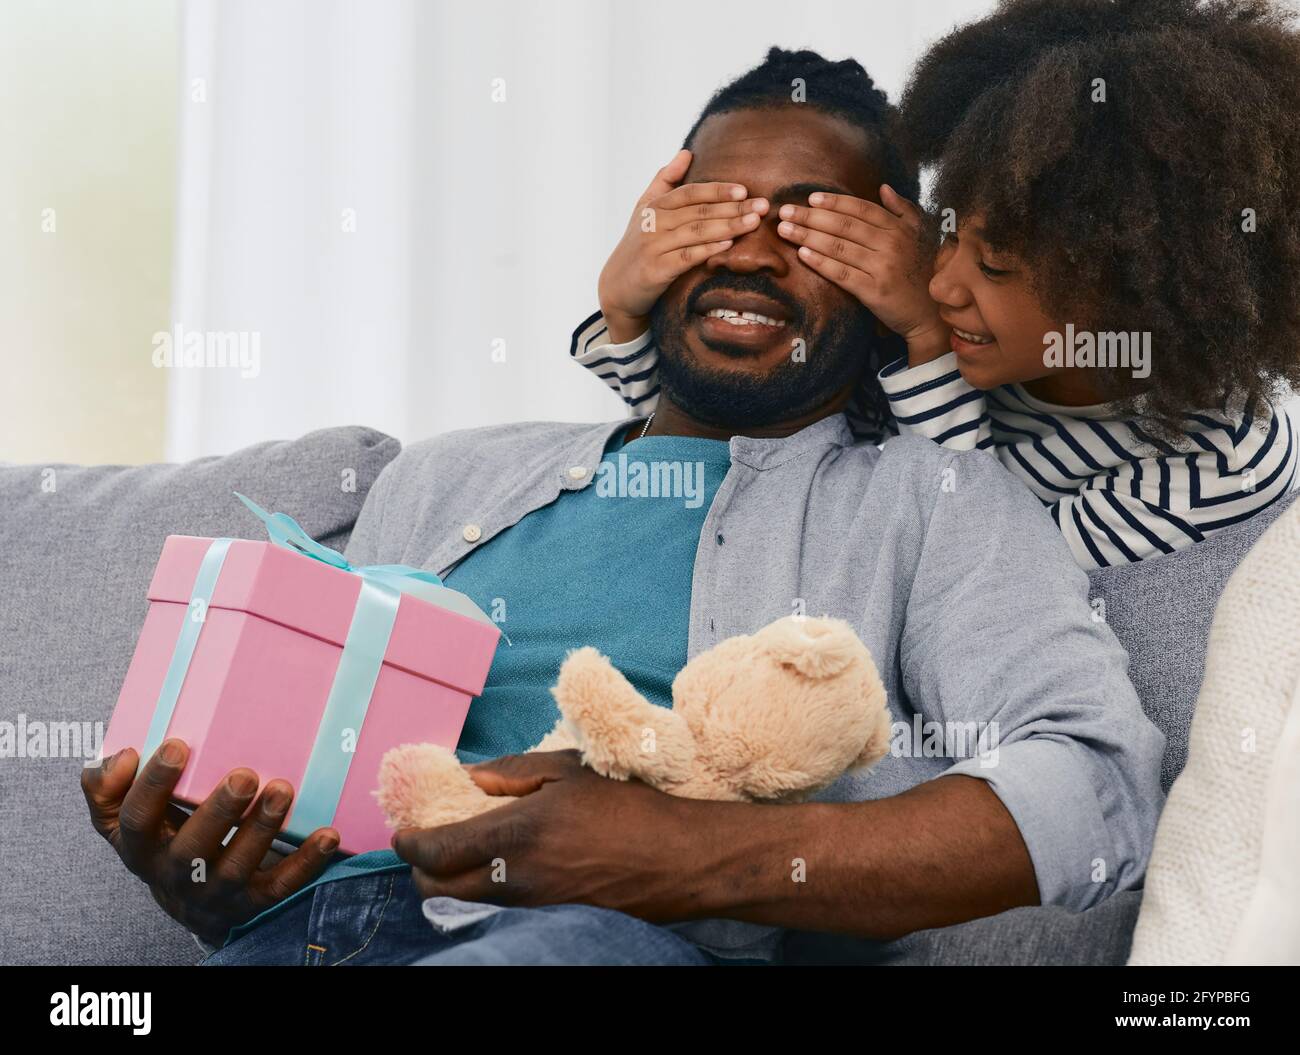 Une petite fille afro-américaine donne à son père un cadeau pour la fête des pères. Surprise de la fille pour le père Banque D'Images